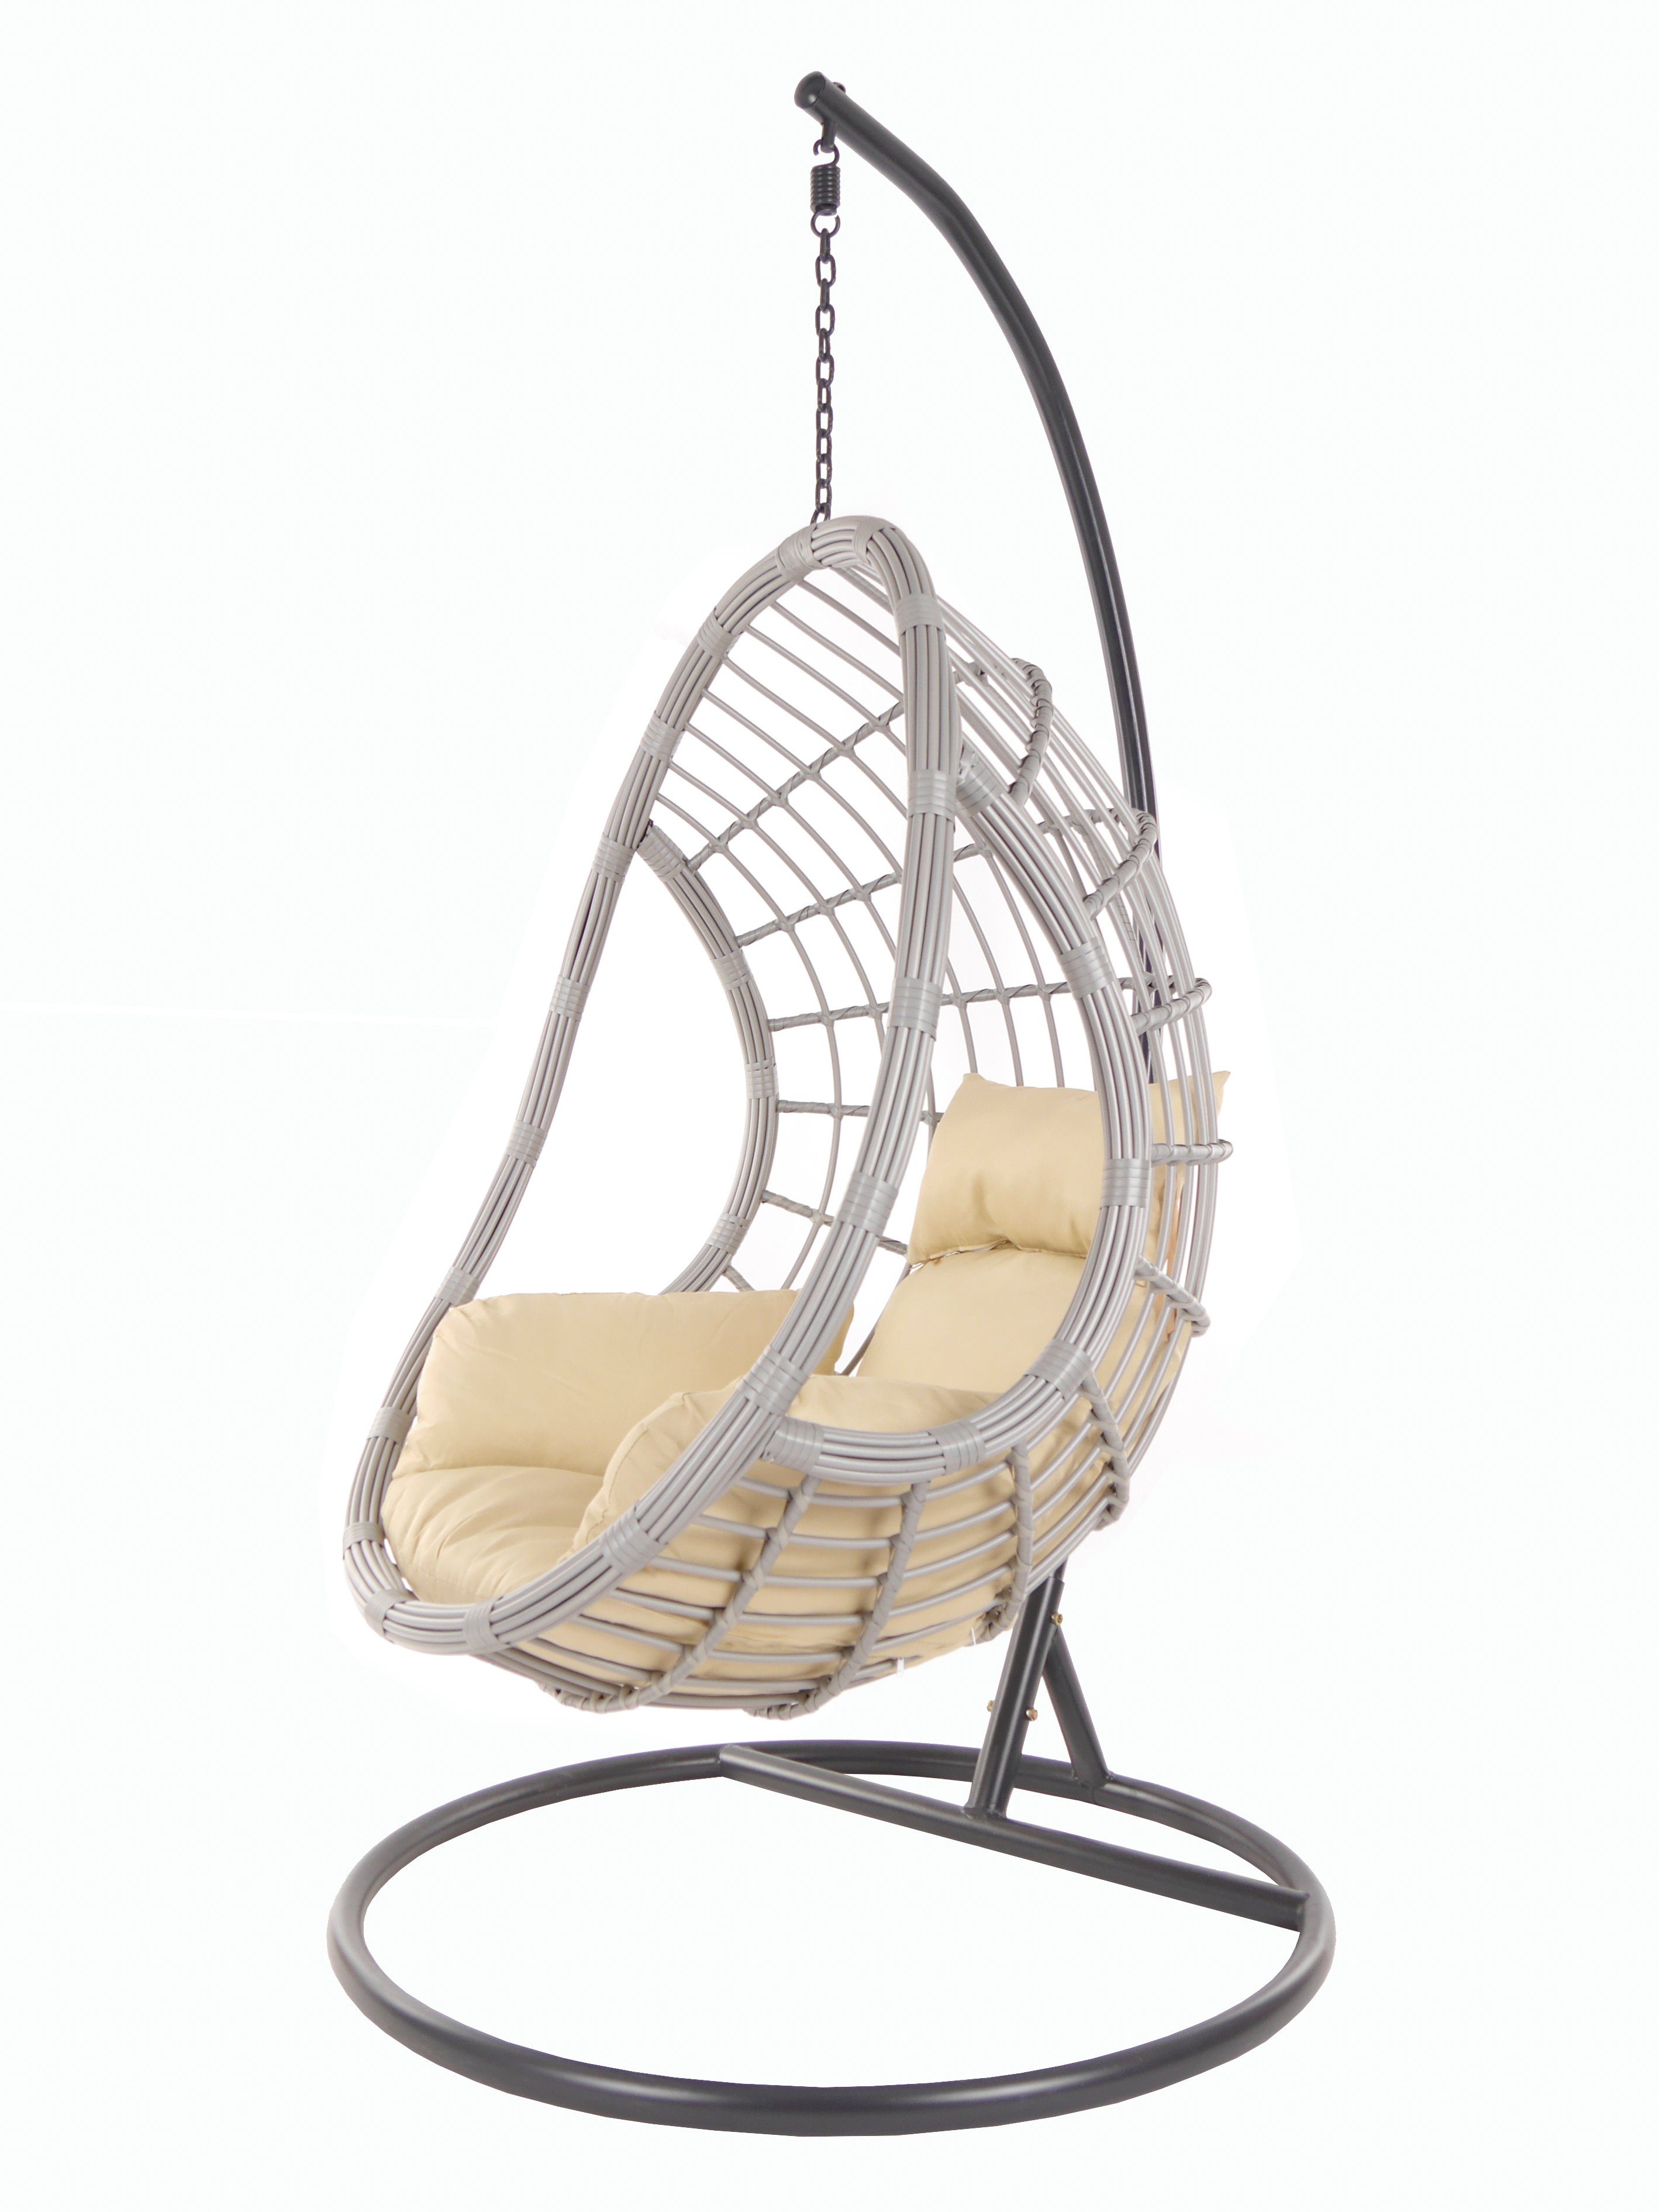 KIDEO hellbraun Loungemöbel Chair, Hängesessel Schwebesessel mit und (7007 Kissen, Swing capucchino) lightgrey, PALMANOVA Gestell